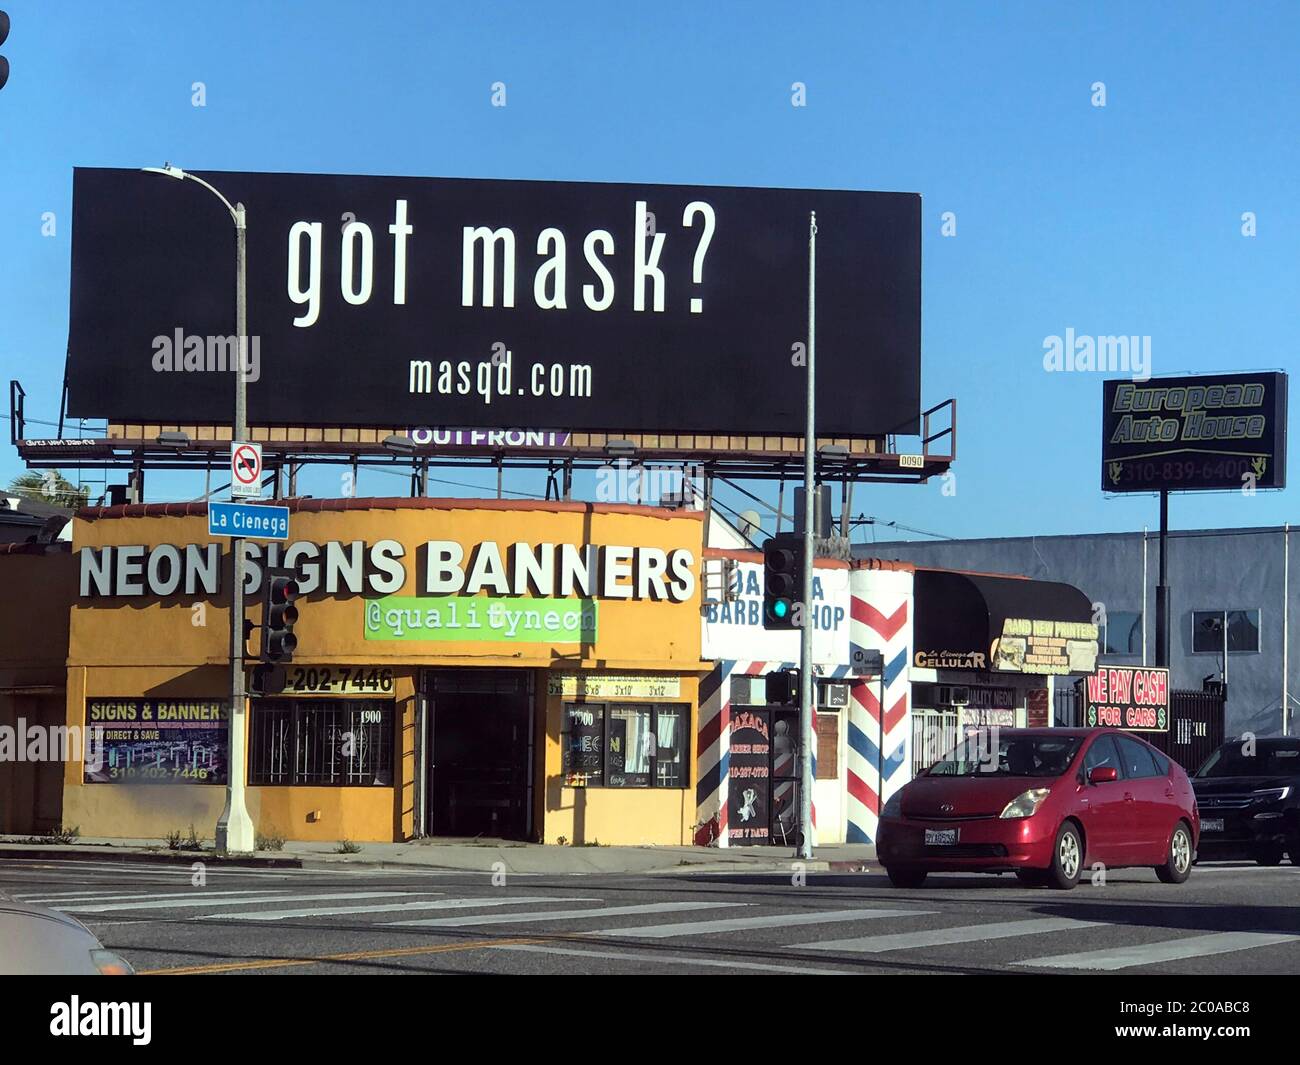 Un panneau publicitaire à Los Angeles pour la promotion de la vente de masques en ligne dans le sillage de l'épidémie de virus Corona. Banque D'Images